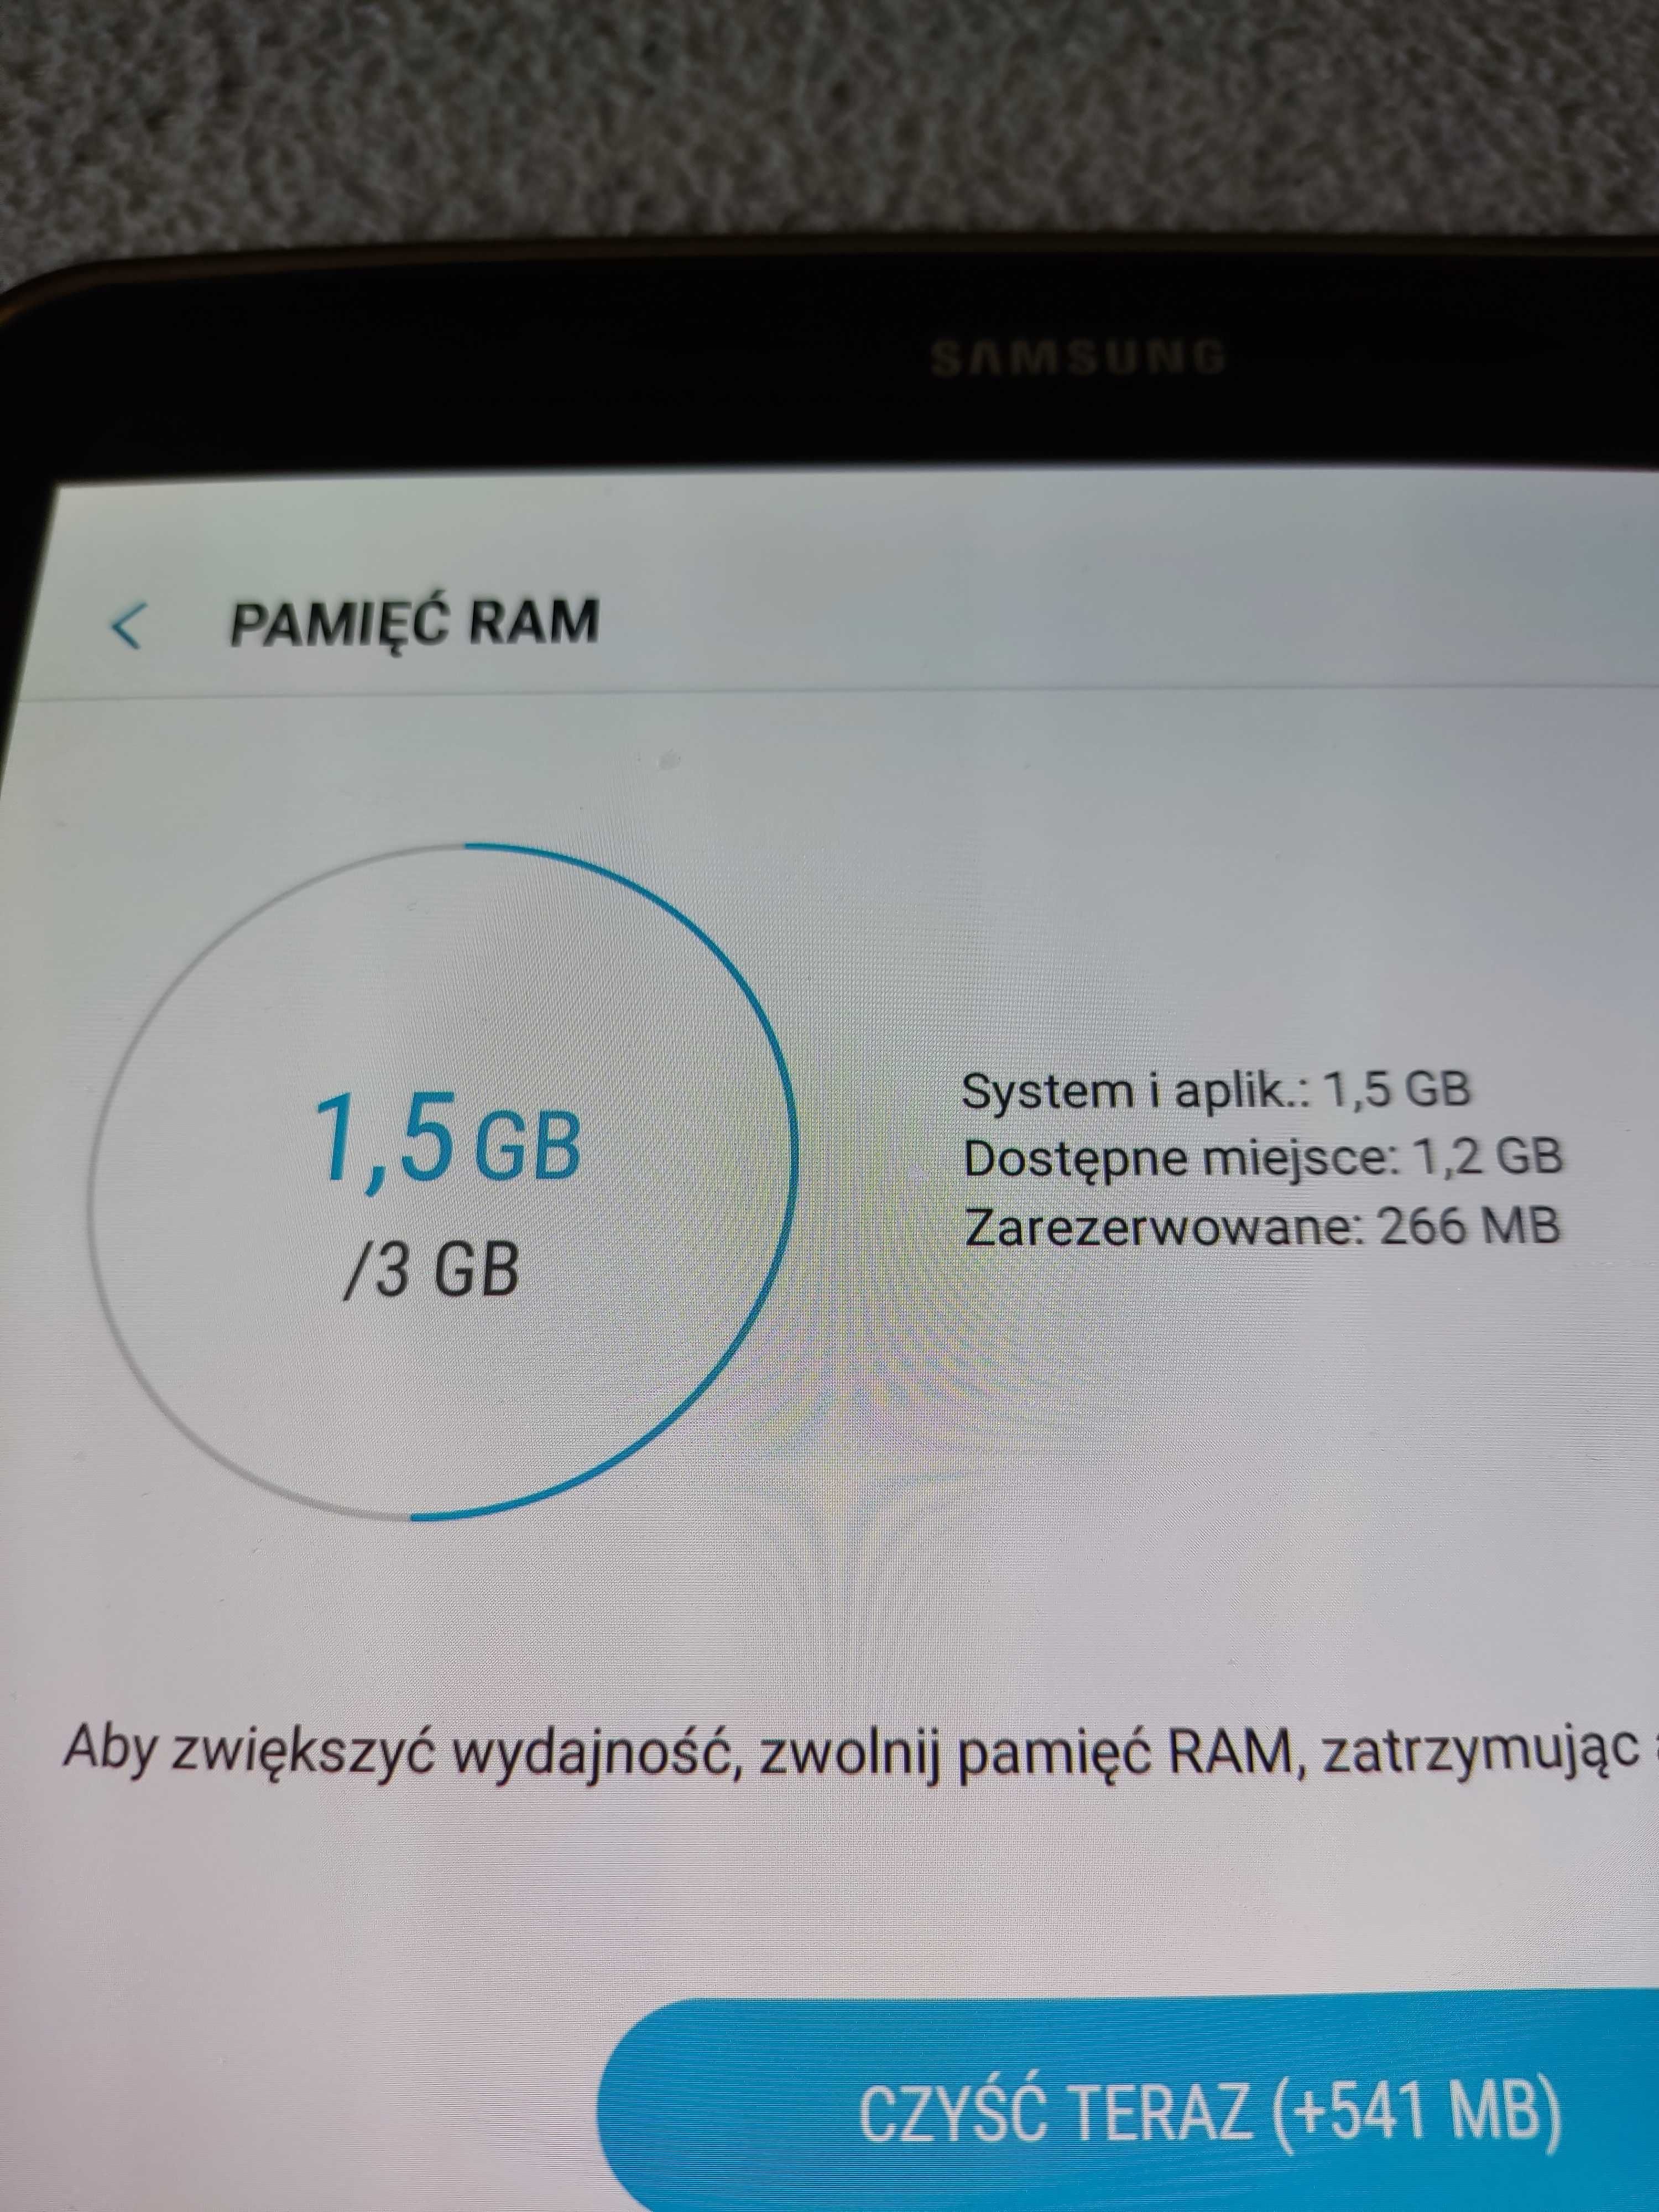 Tablet Samsung Galaxy Tab S2 ekran 9,7" 3/32 GB